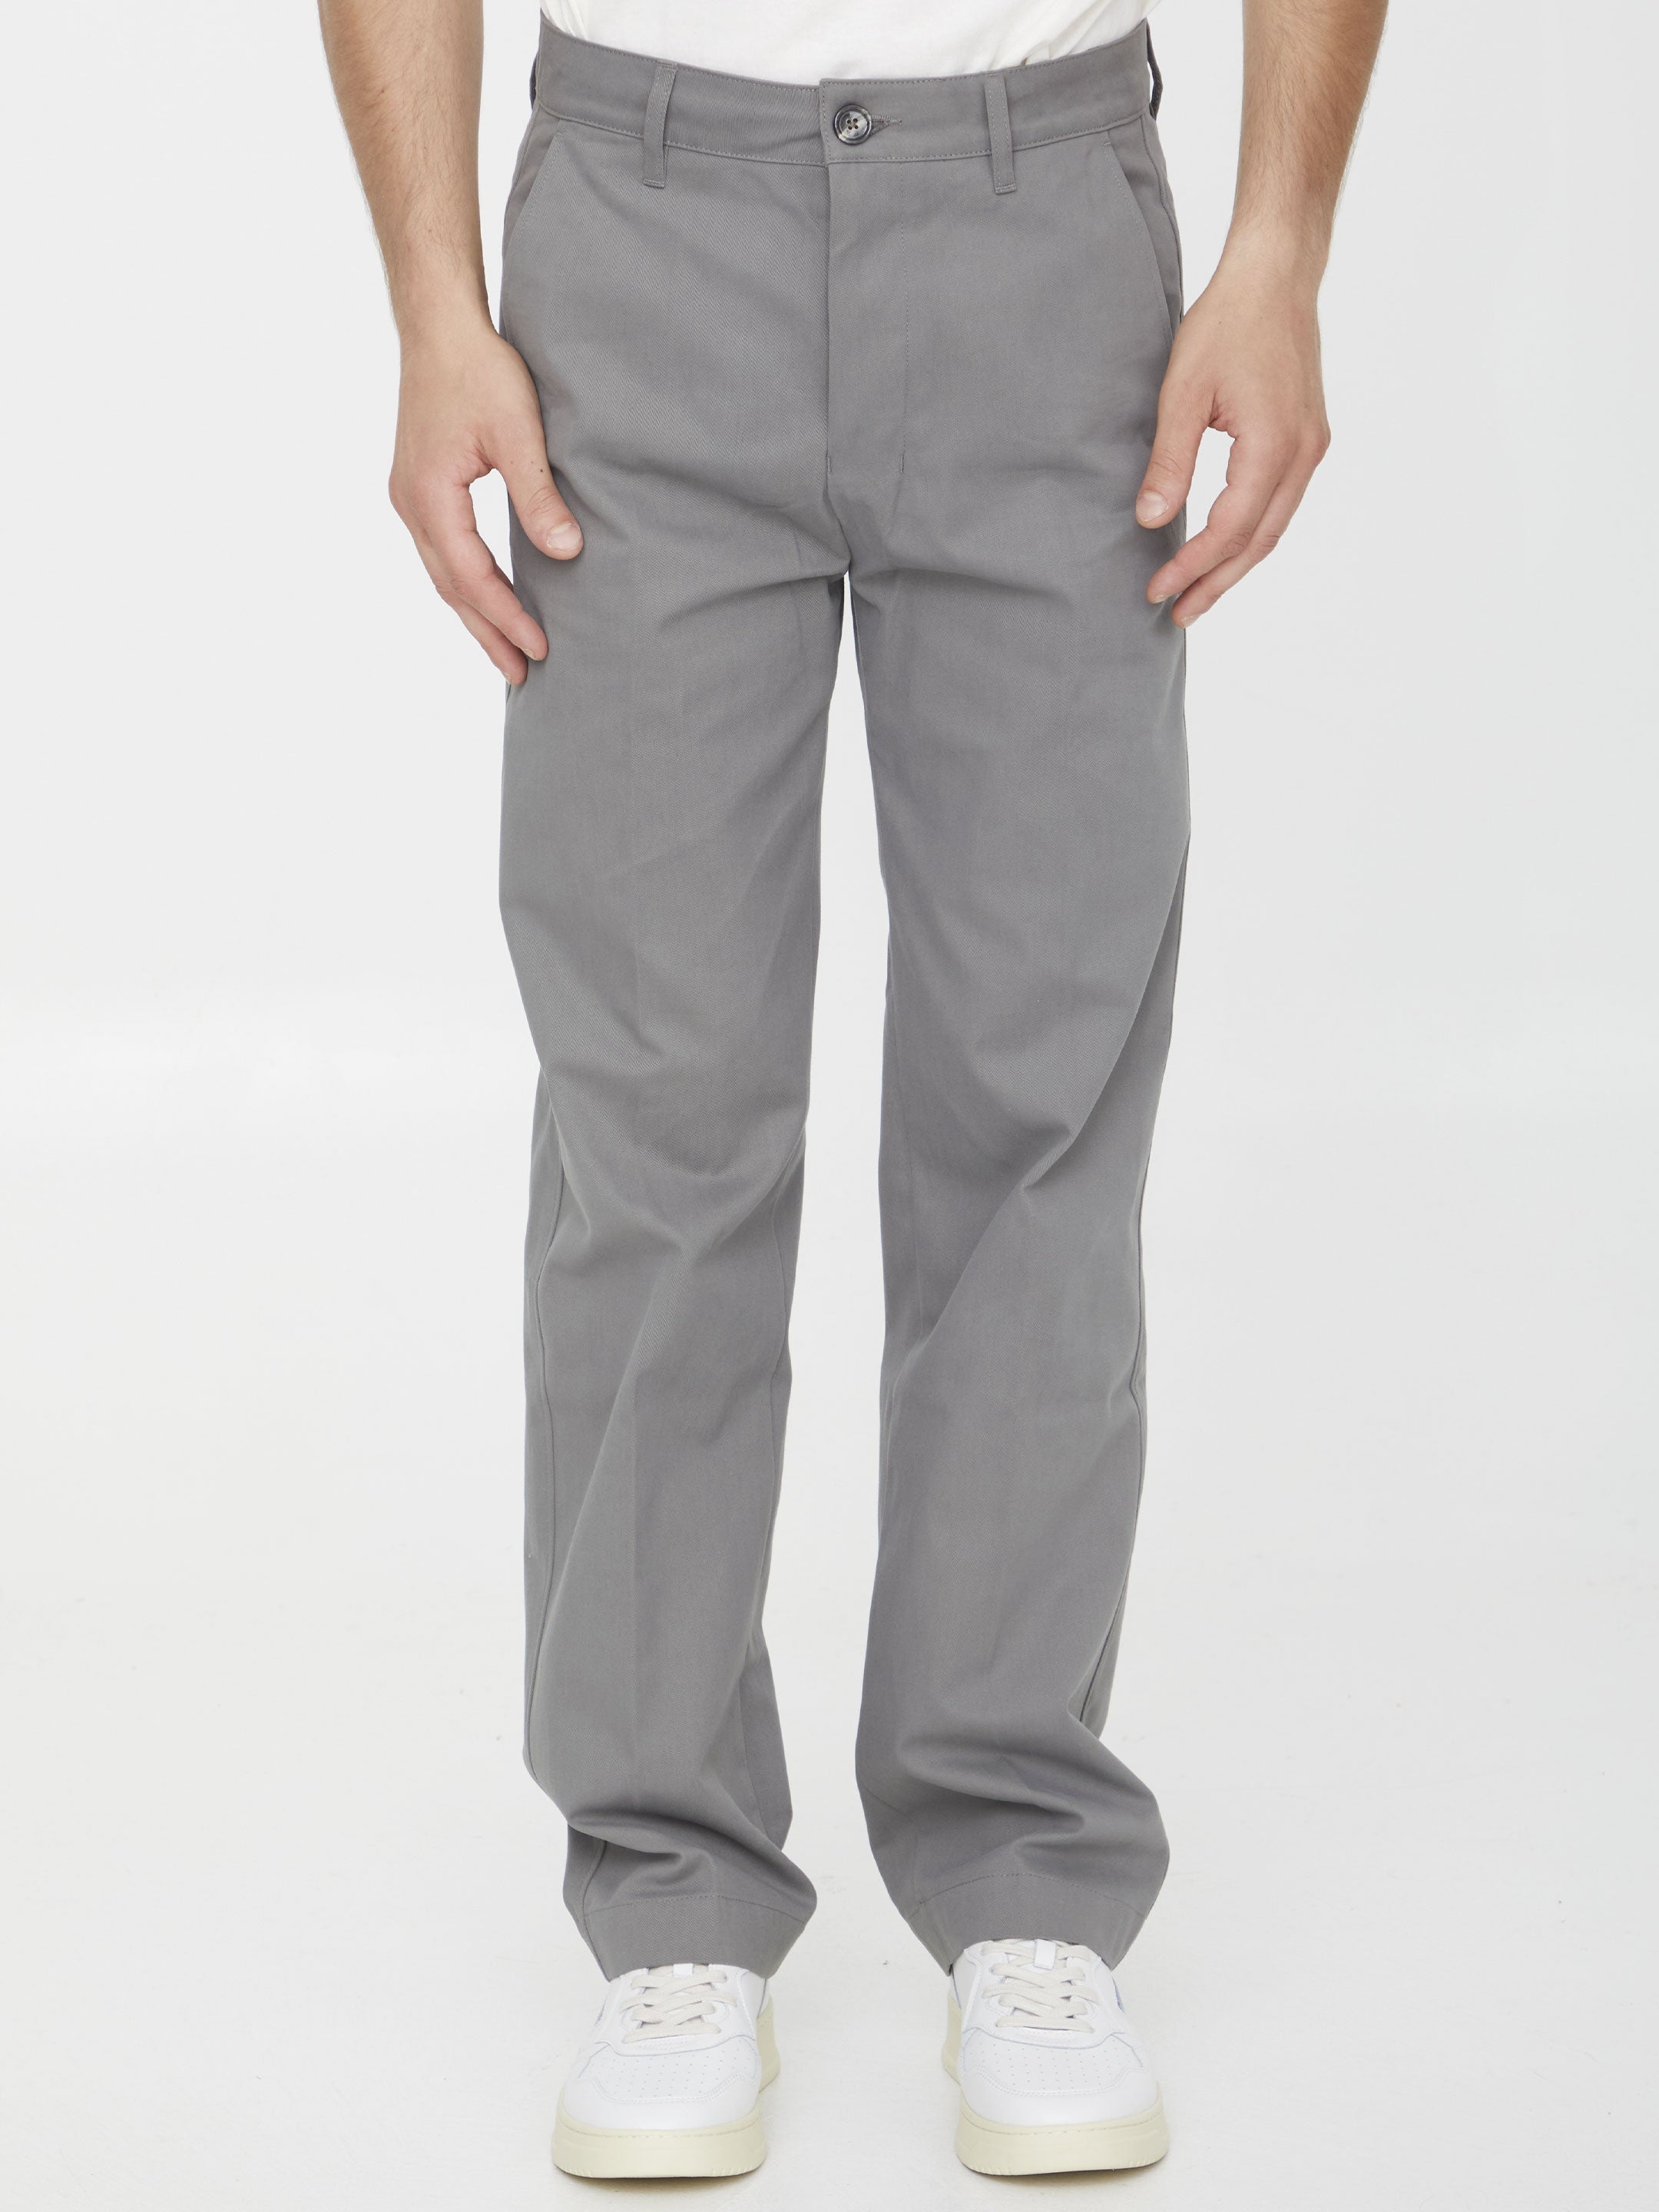 Grey chino pants